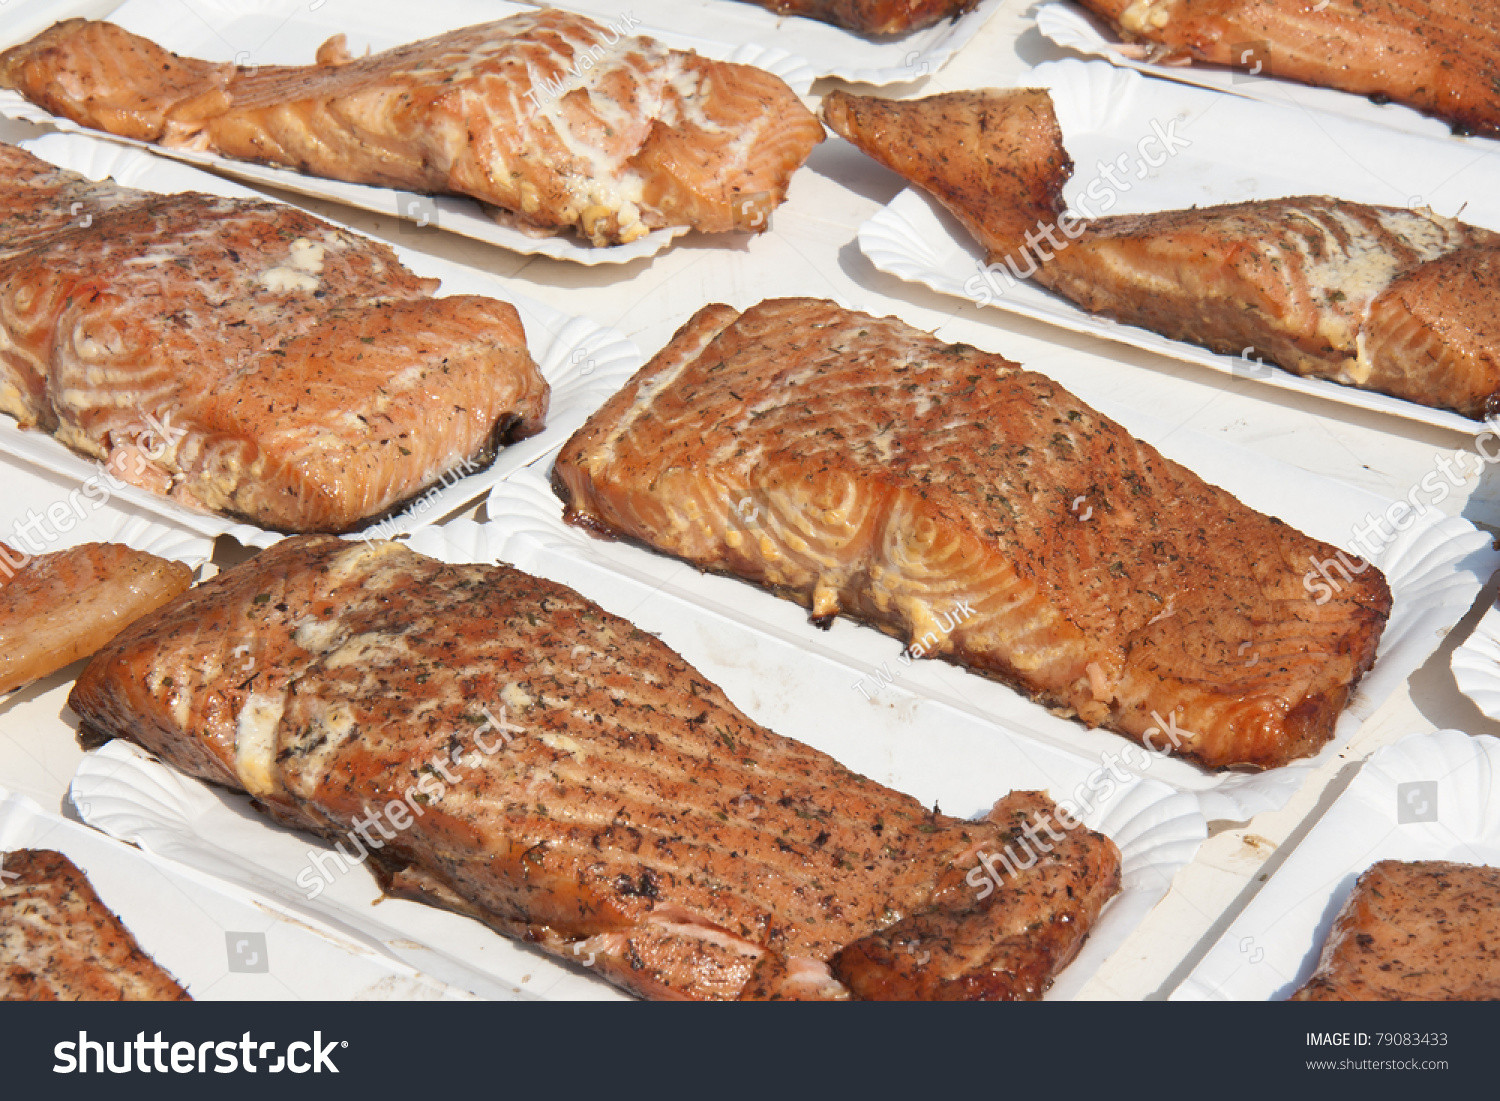 Smoked Salmon For Sale
 Smoked Salmon For Sale At A Market Stock